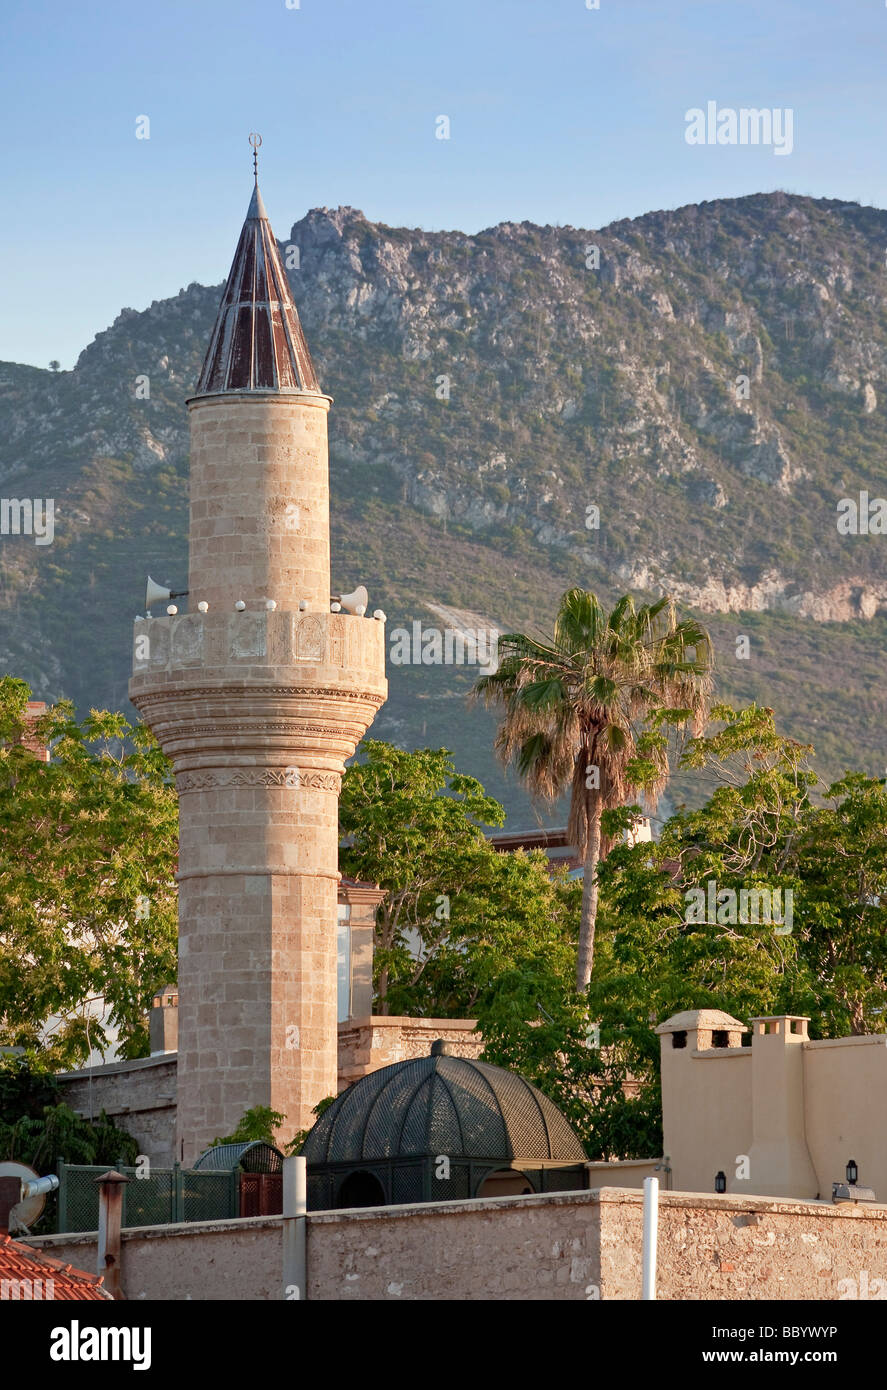 Il minareto di Cafer Pasa Camisi o Cafer Pasha moschea, Kyrenia, noto anche come Girne, la parte settentrionale di Cipro, Cipro, Europa Foto Stock